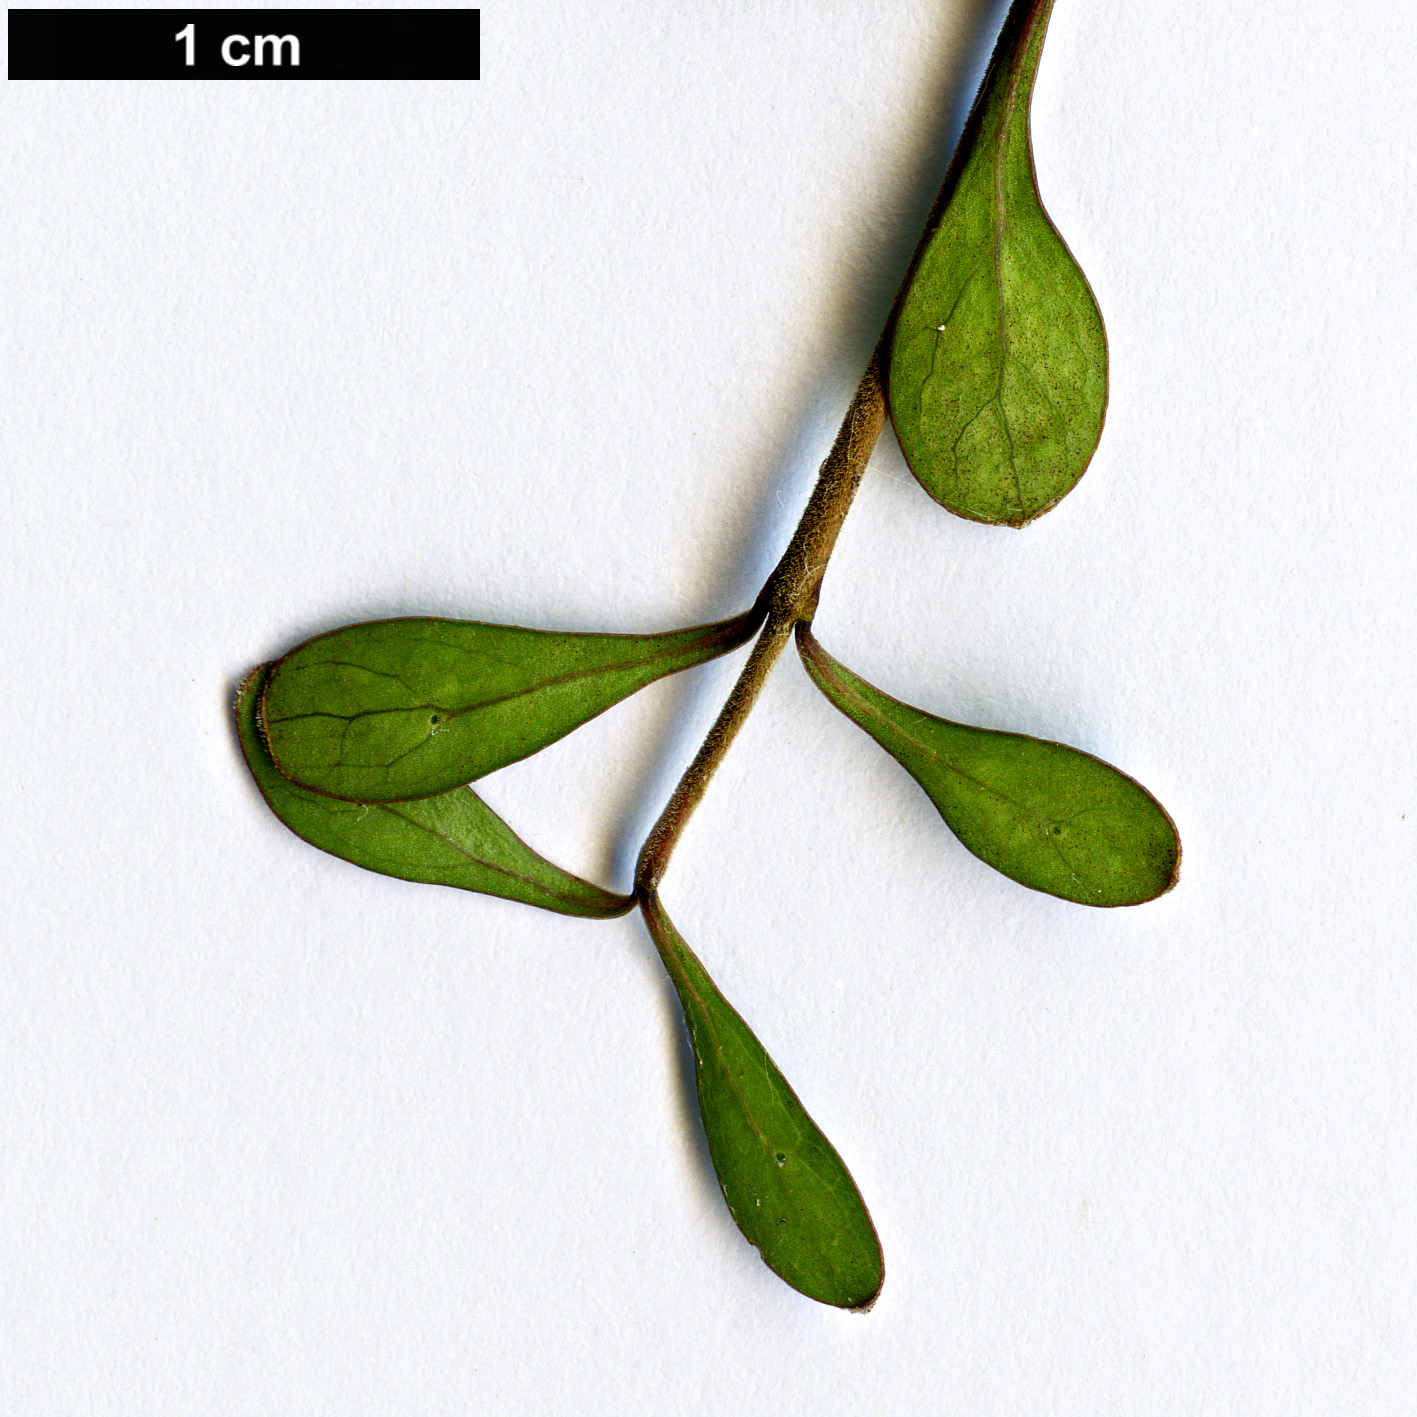 High resolution image: Family: Rubiaceae - Genus: Coprosma - Taxon: rigida